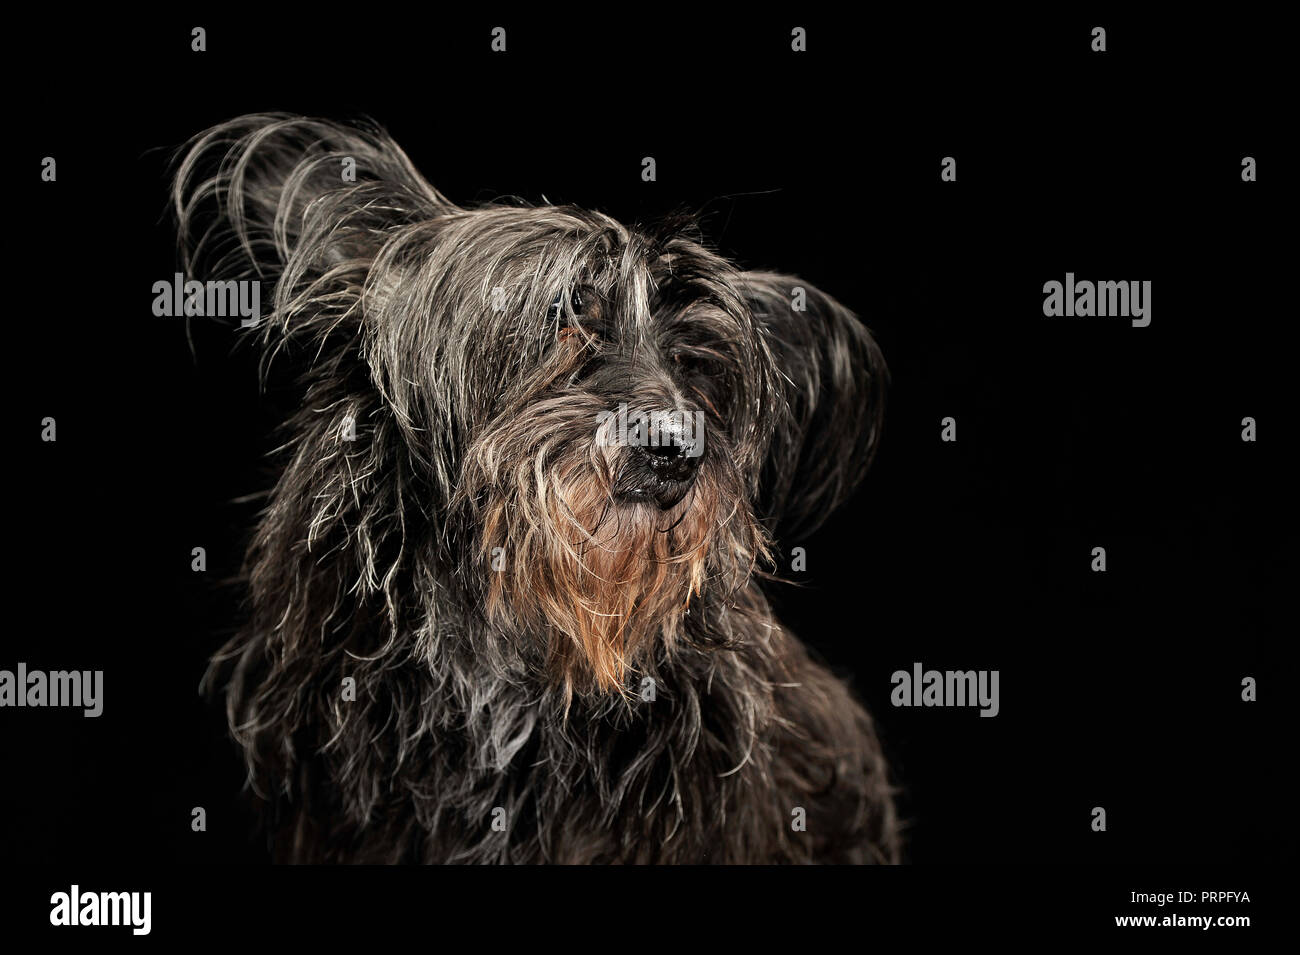 black fur dog in a dark photo studio Stock Photo